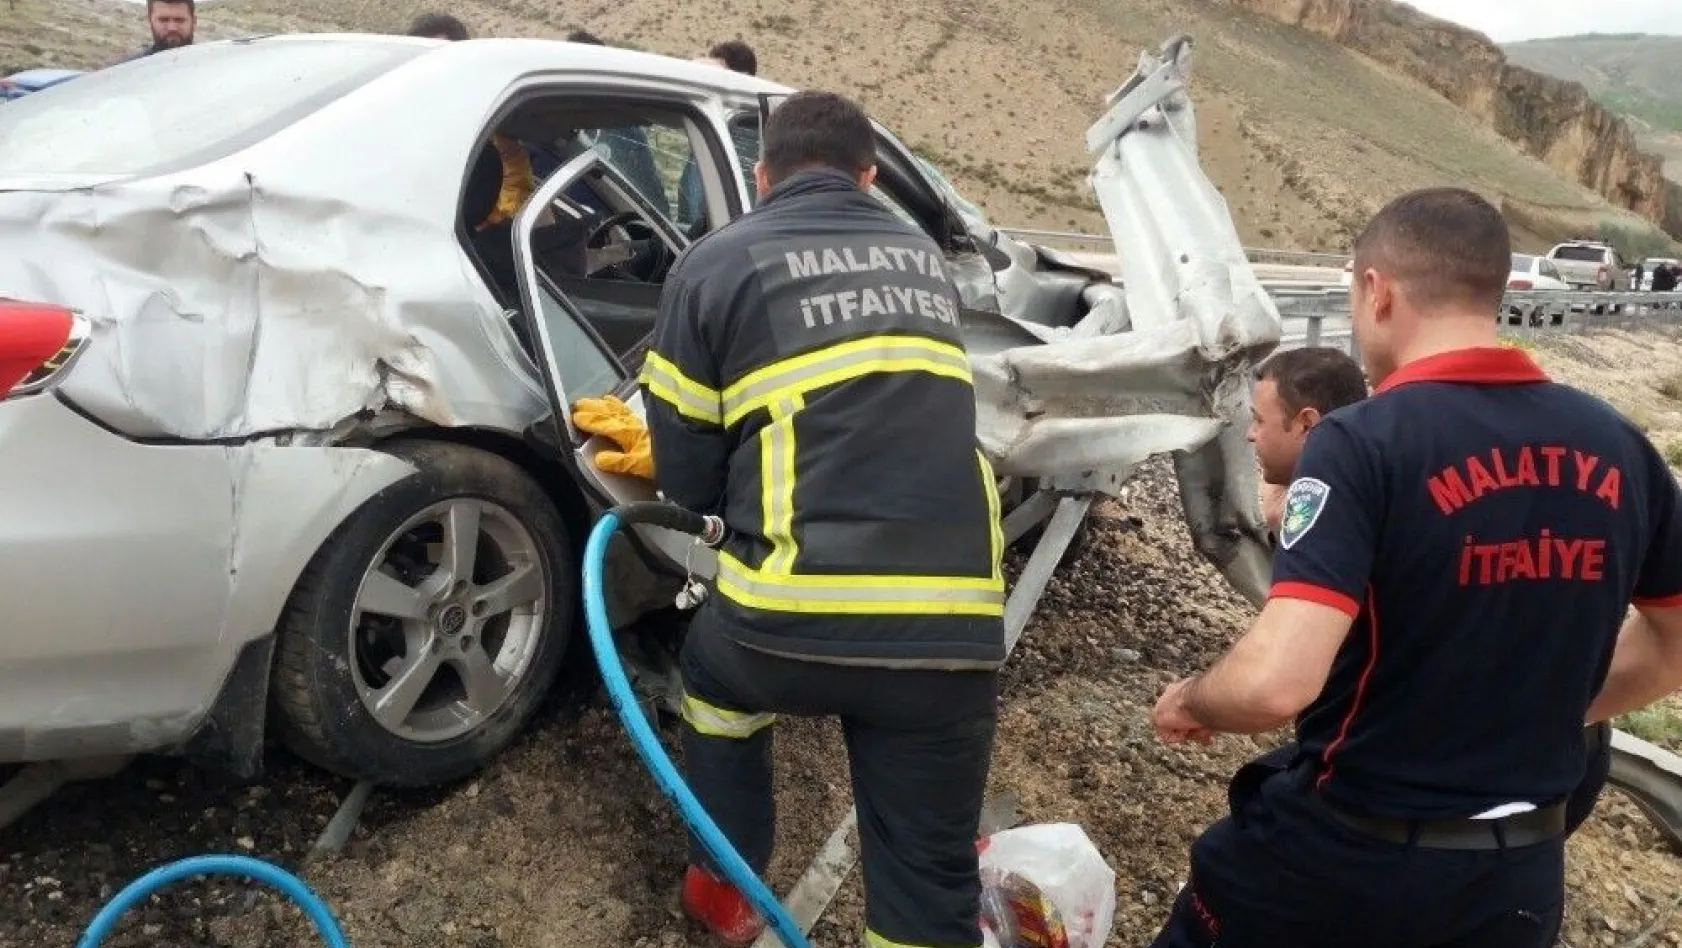 Malatya'da araç bariyerlere çarptı: 1 ölü, 2 yaralı
